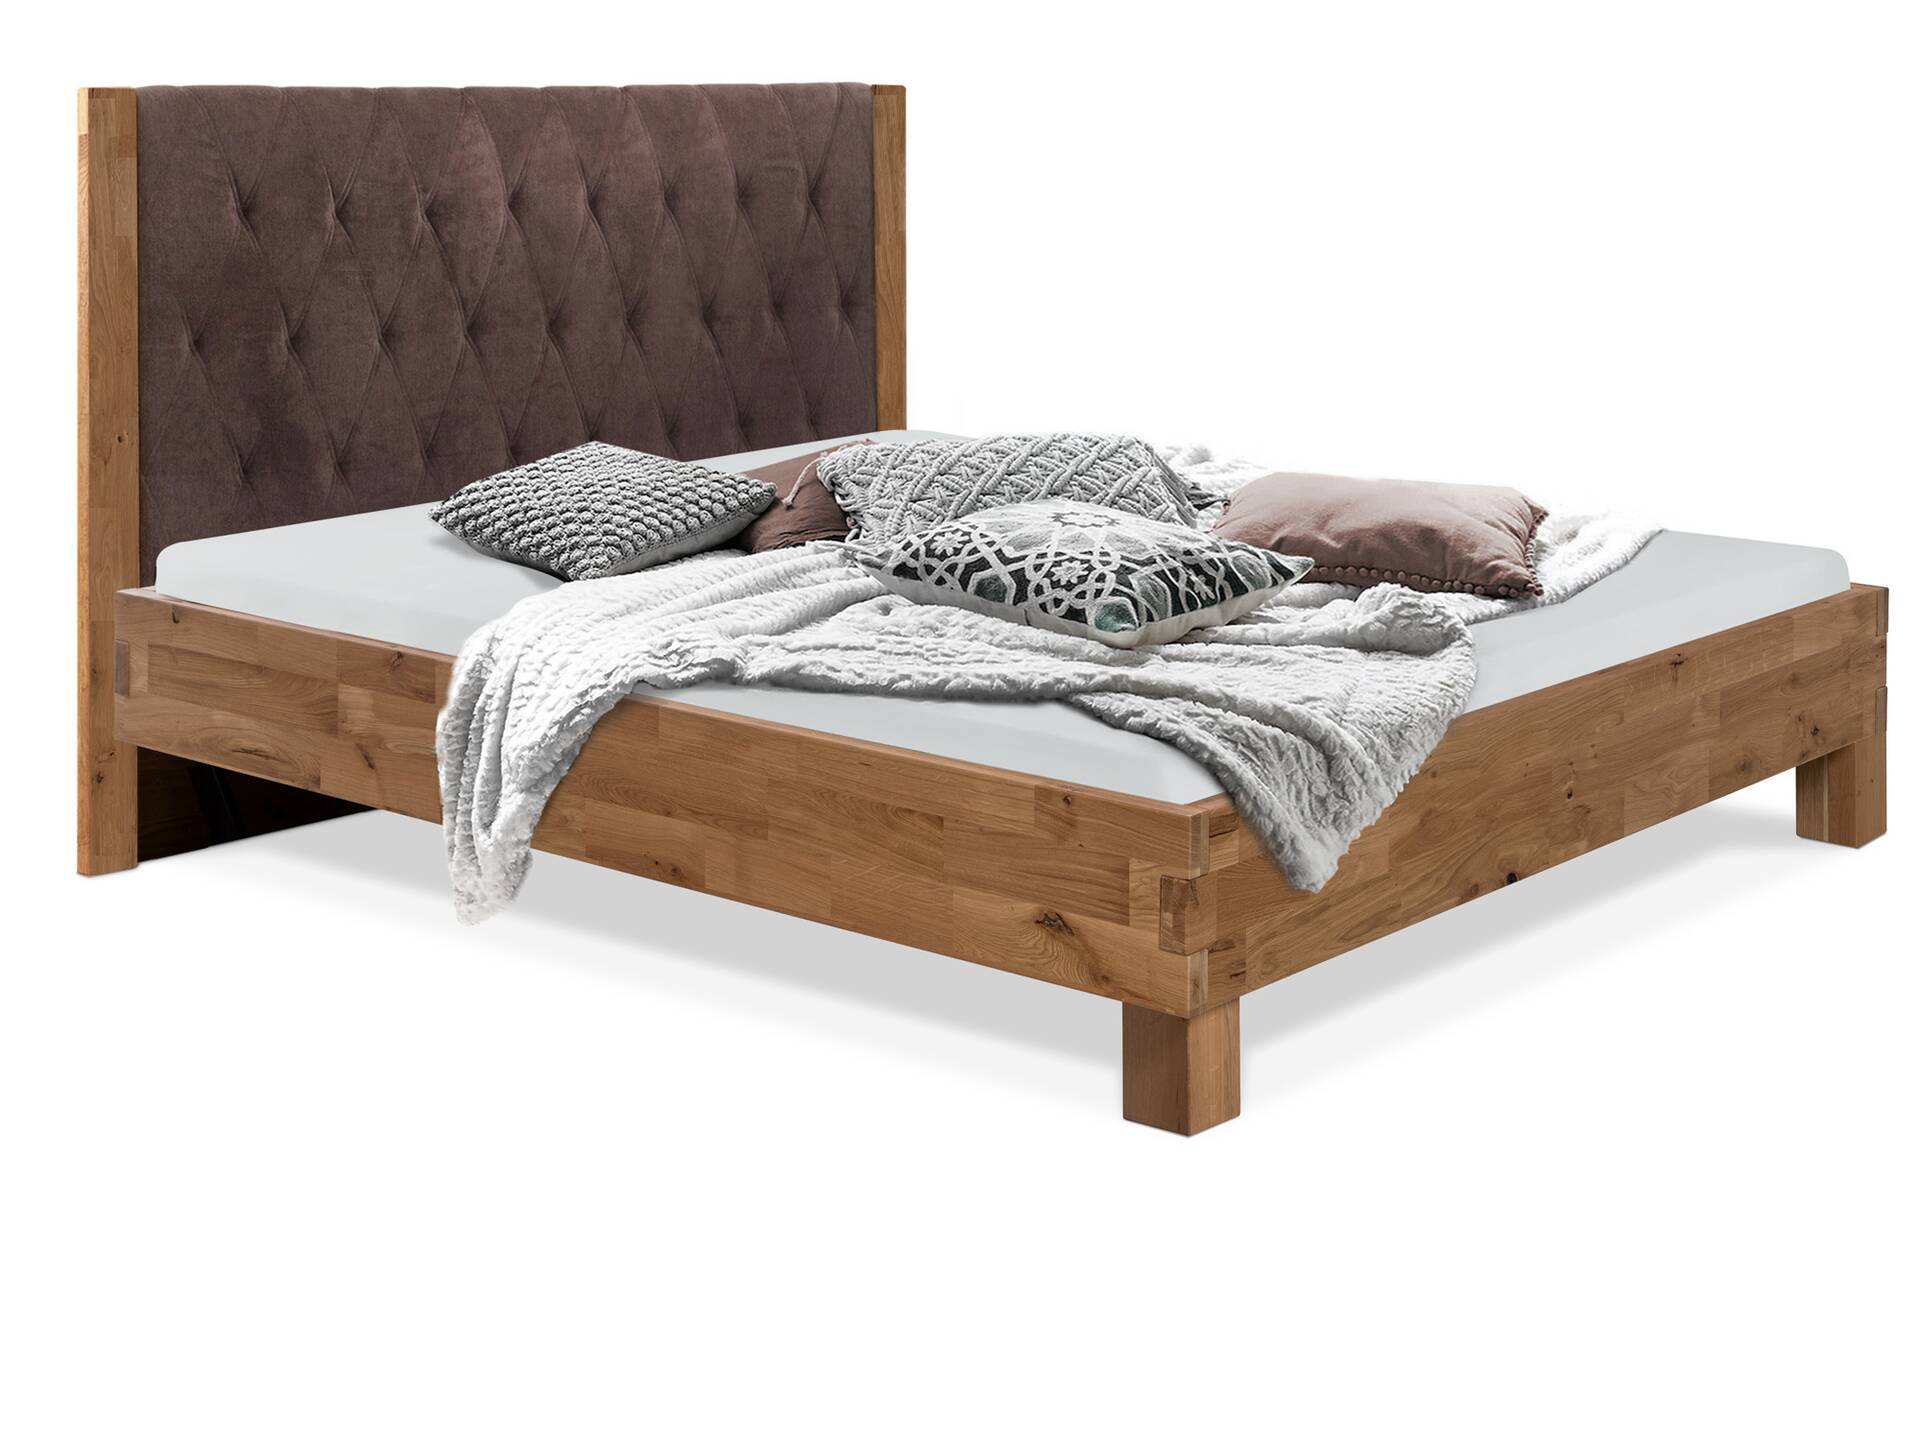 CORDINO 4-Fuß-Bett aus Eiche mit gestepptem Polster-Kopfteil, Material Massivholz 160 x 200 cm | Eiche lackiert | Stoff Braun | gebürstet